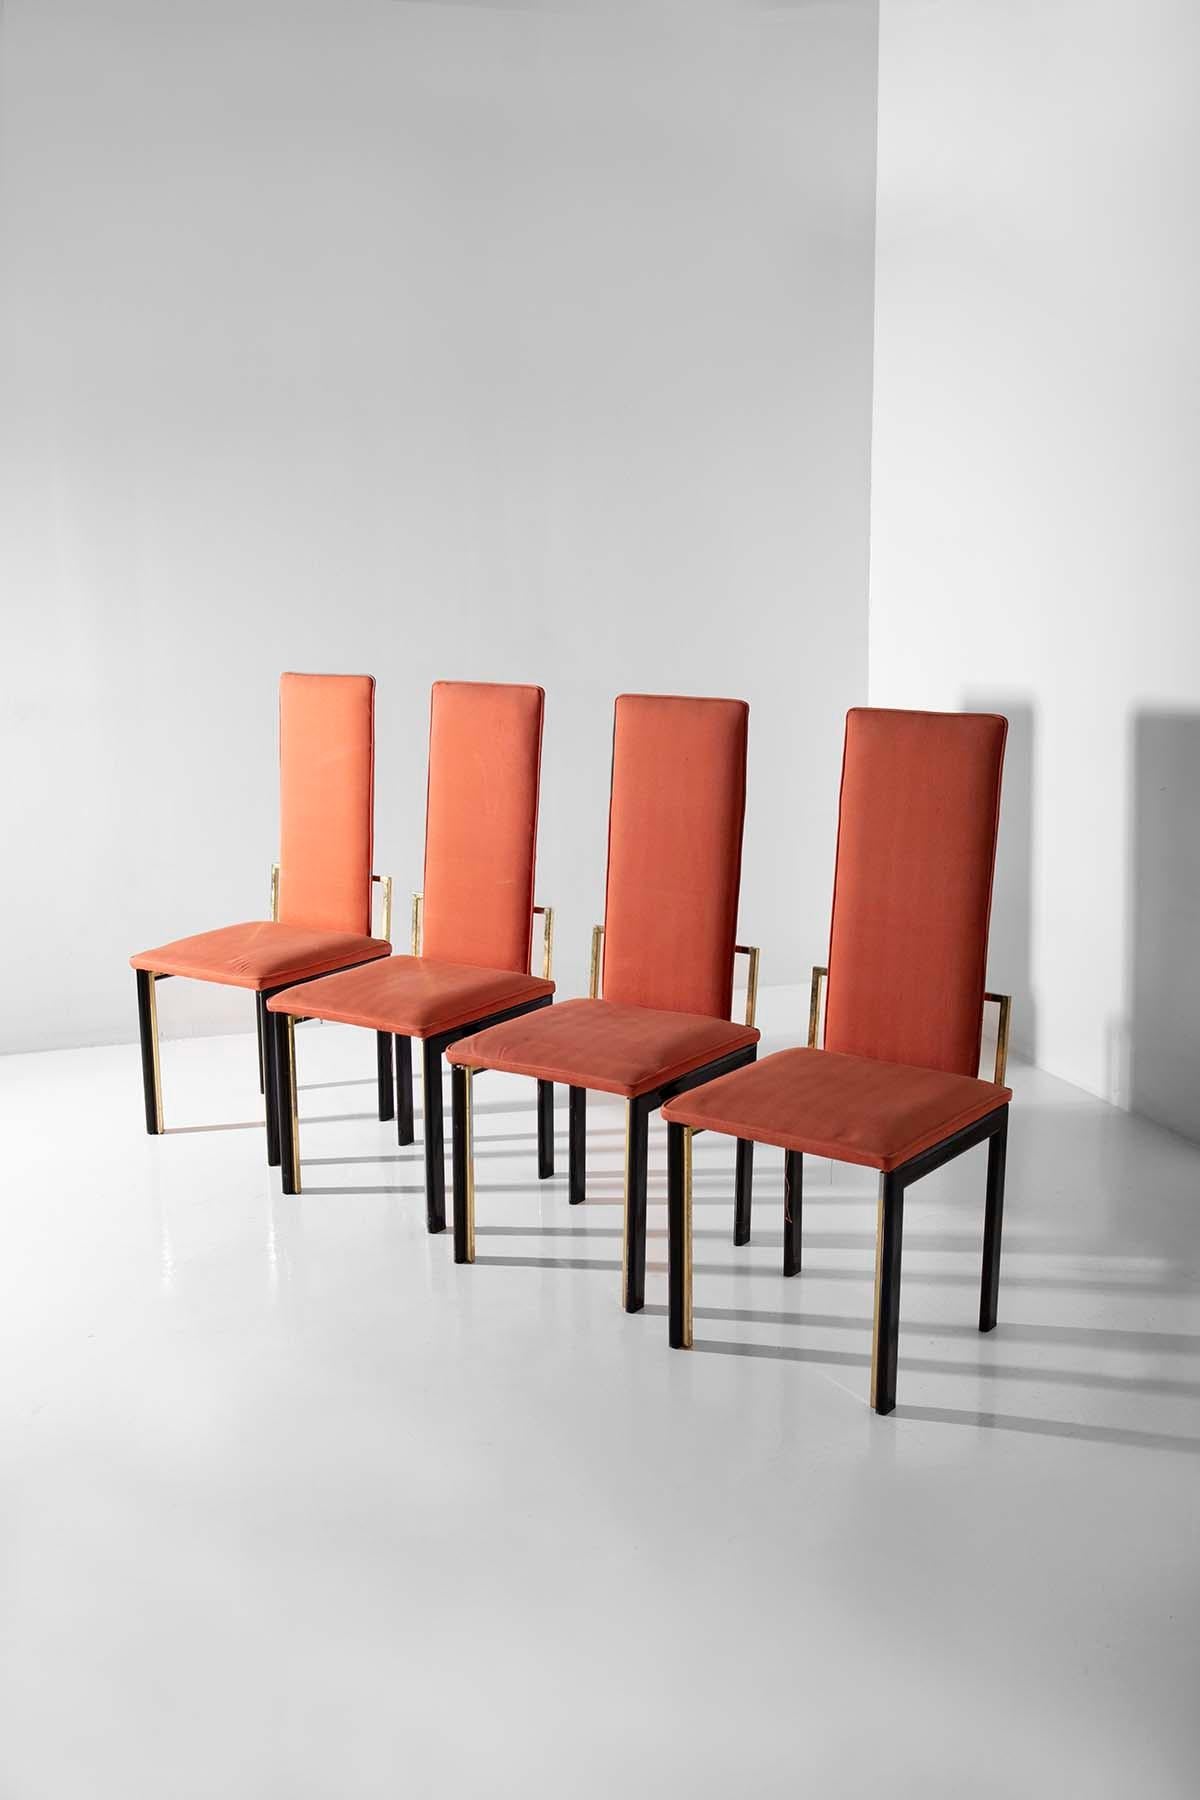 Ce charmant ensemble de quatre chaises italiennes vintage capture l'esprit libre et innovant des années 1970. Baignées dans les tons chauds et vibrants de l'orange saumoné, ces chaises se distinguent par leur tissu de coton à la texture raffinée